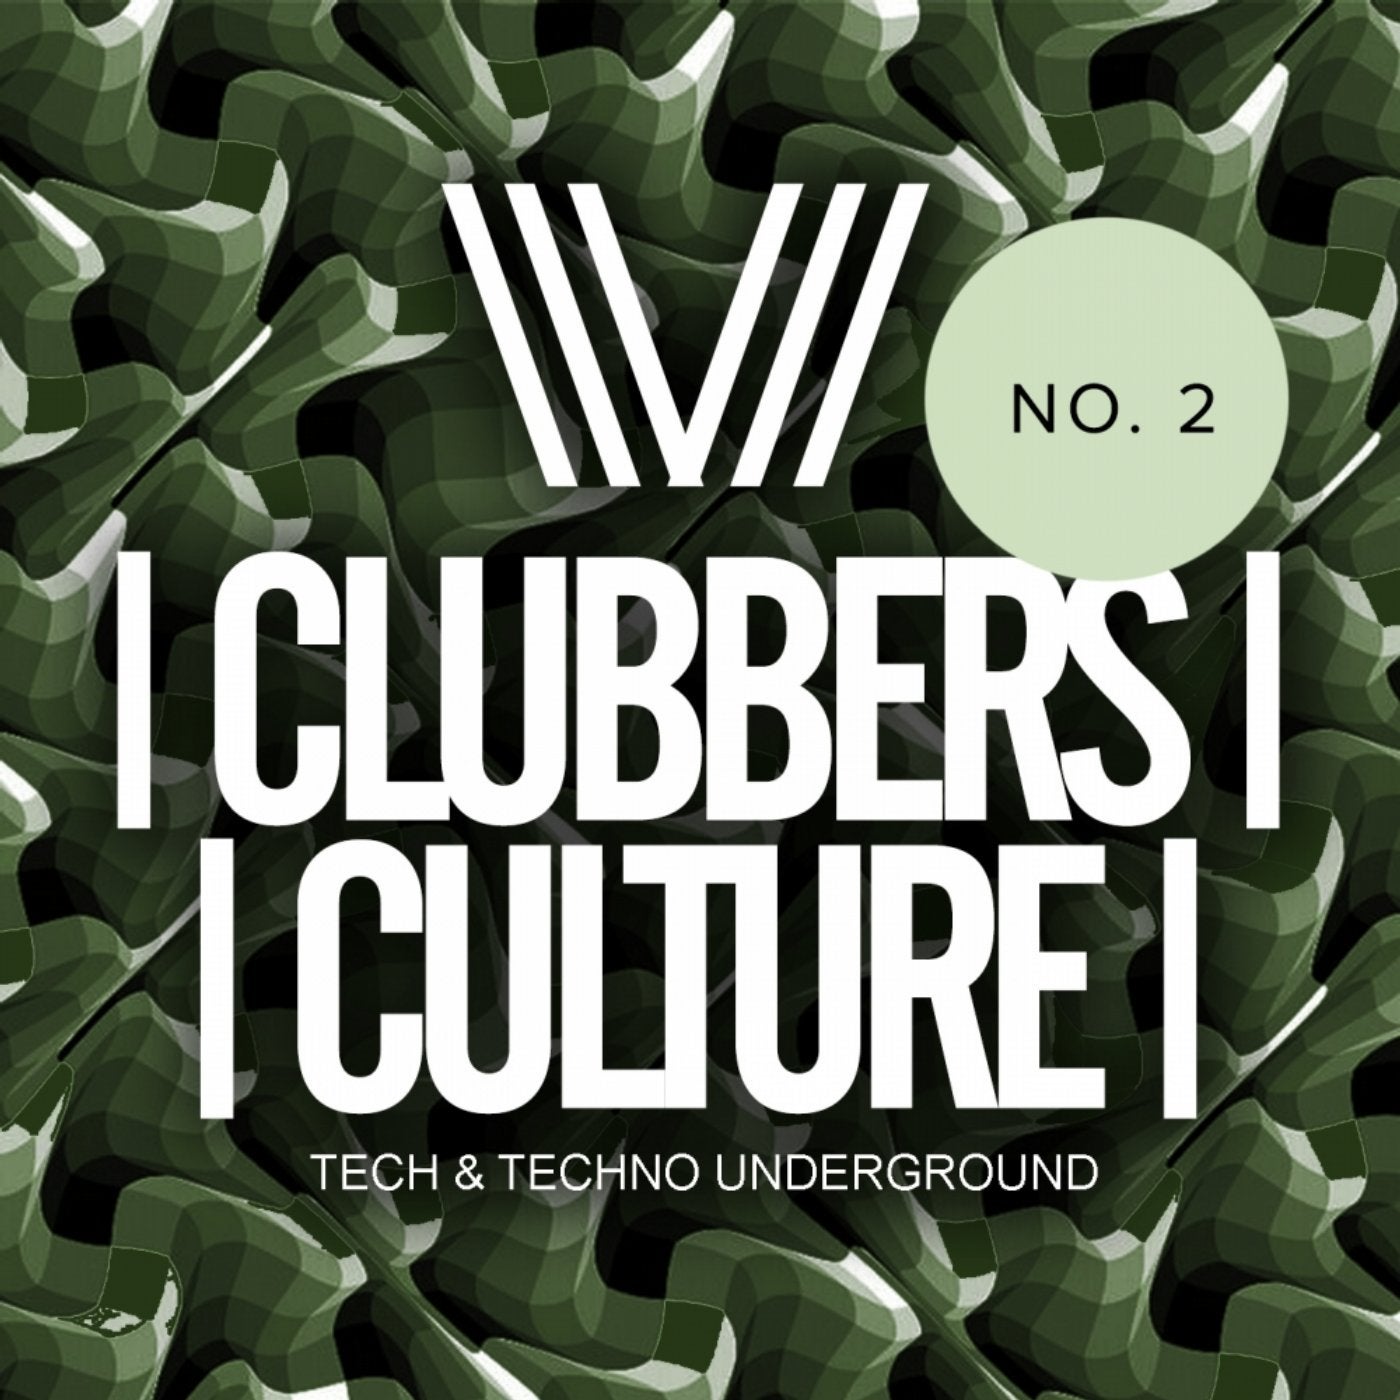 Clubbers Culture: Tech & Techno Underground No.2